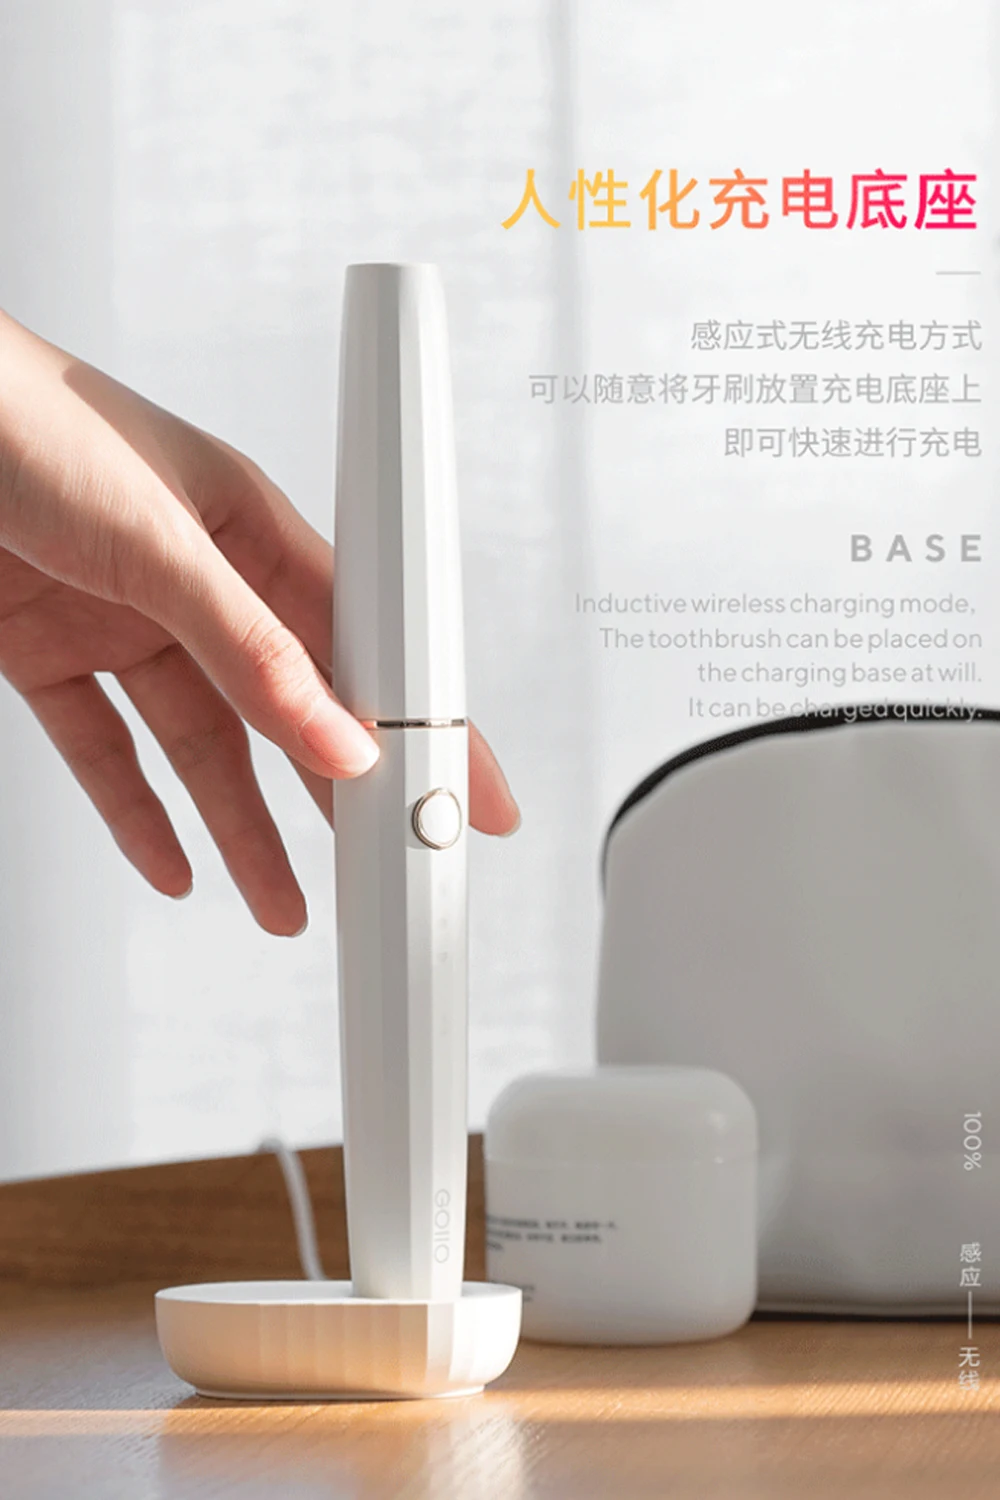 XiaoMi Mijia 3life портативная Мини электрическая зубная щетка Беспроводная Индукционная зарядка водонепроницаемая для умного здорового использования в путешествиях